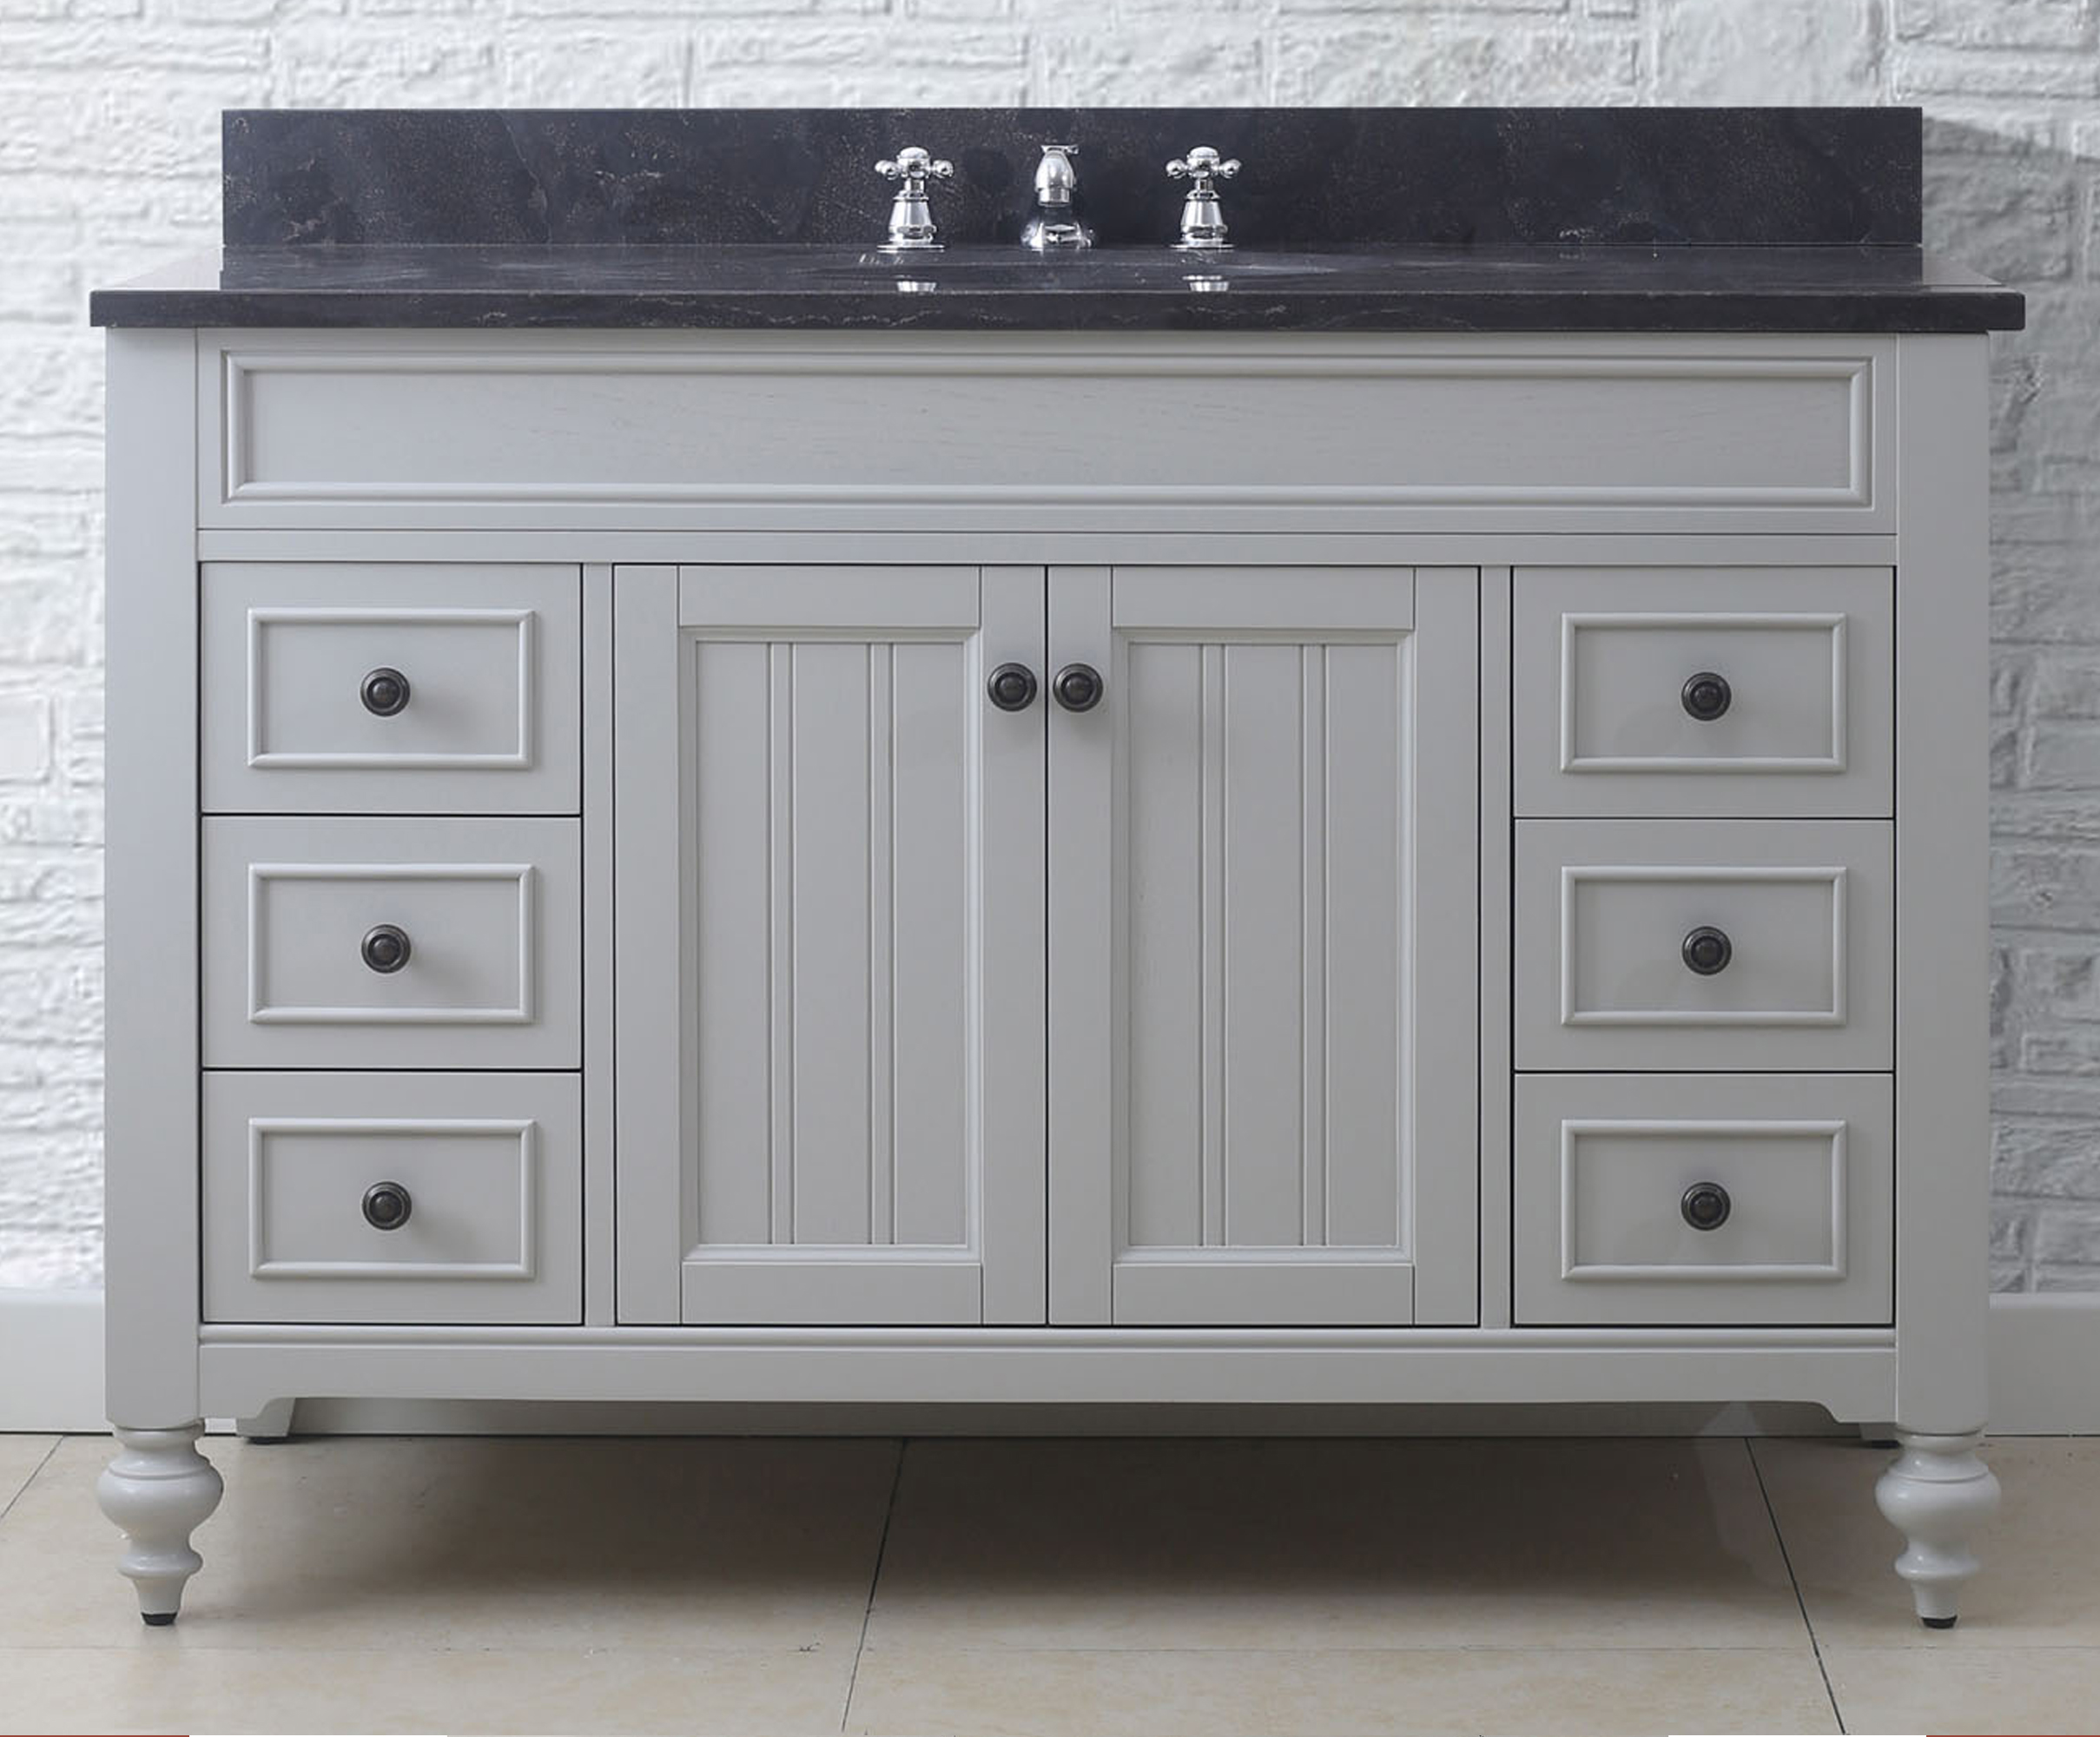 48" Earl Grey Single Sink Bathroom Vanity with Blue Limestone Granite Top